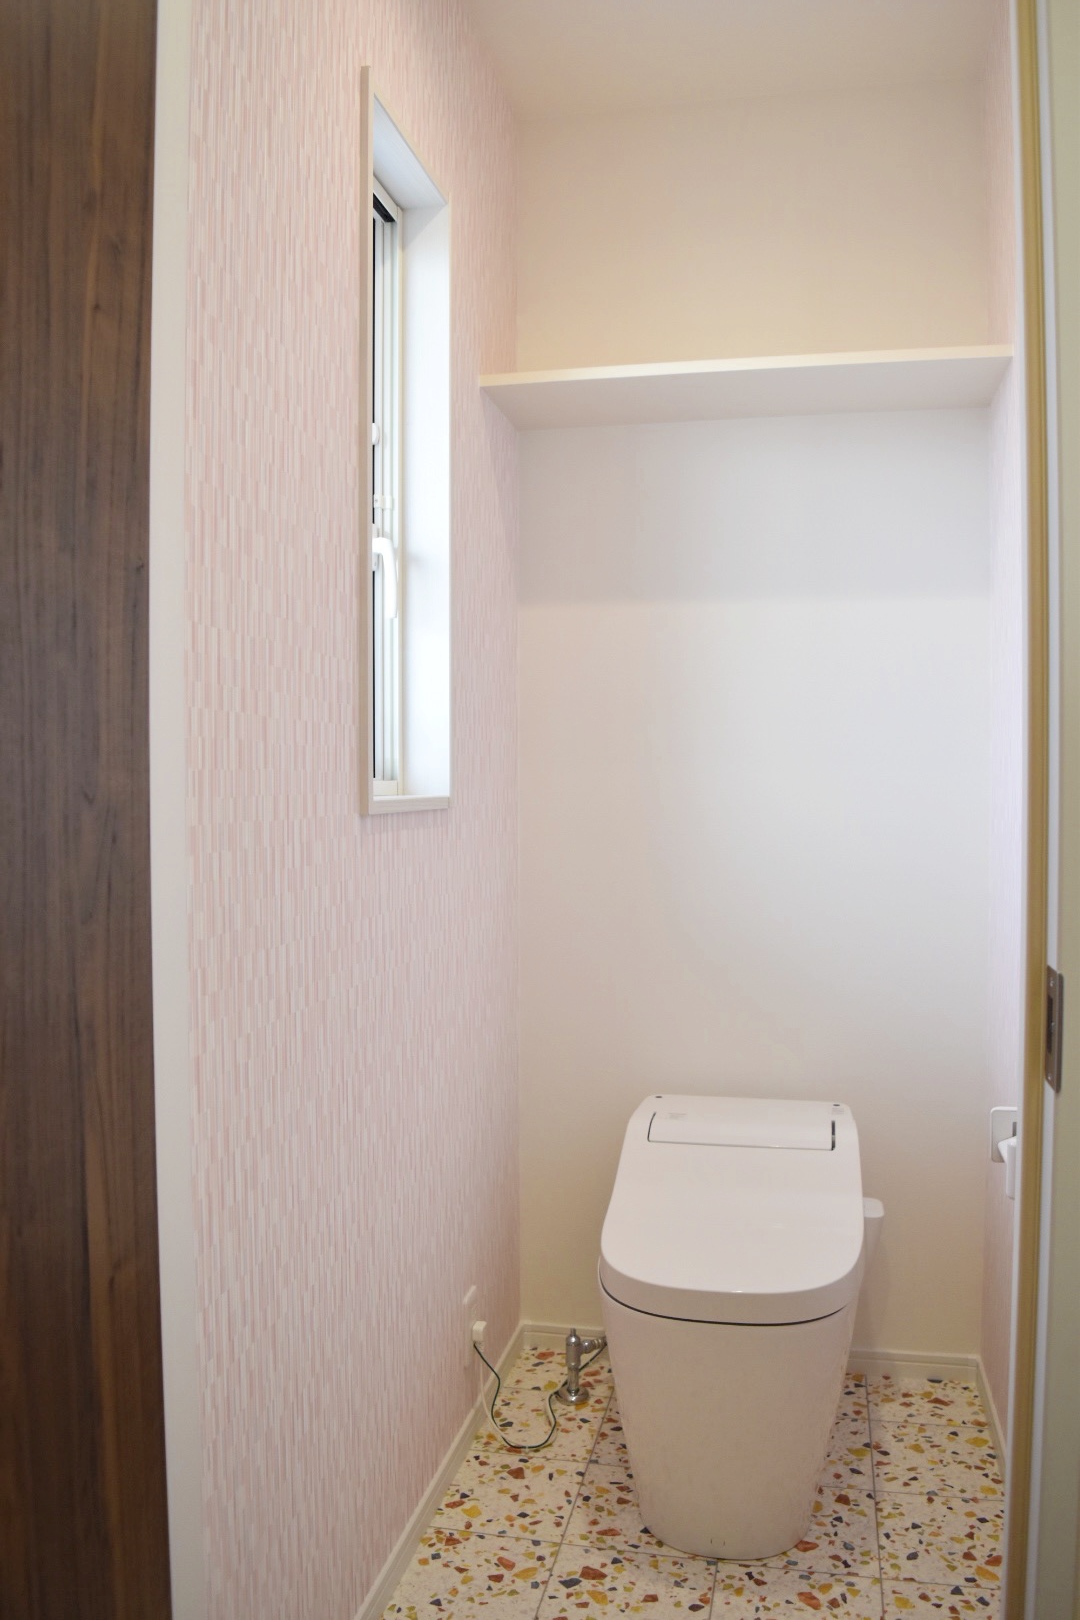 来客の少ない2階のトイレは
遊び心のある床と壁紙にしてみるのもいいですね！
